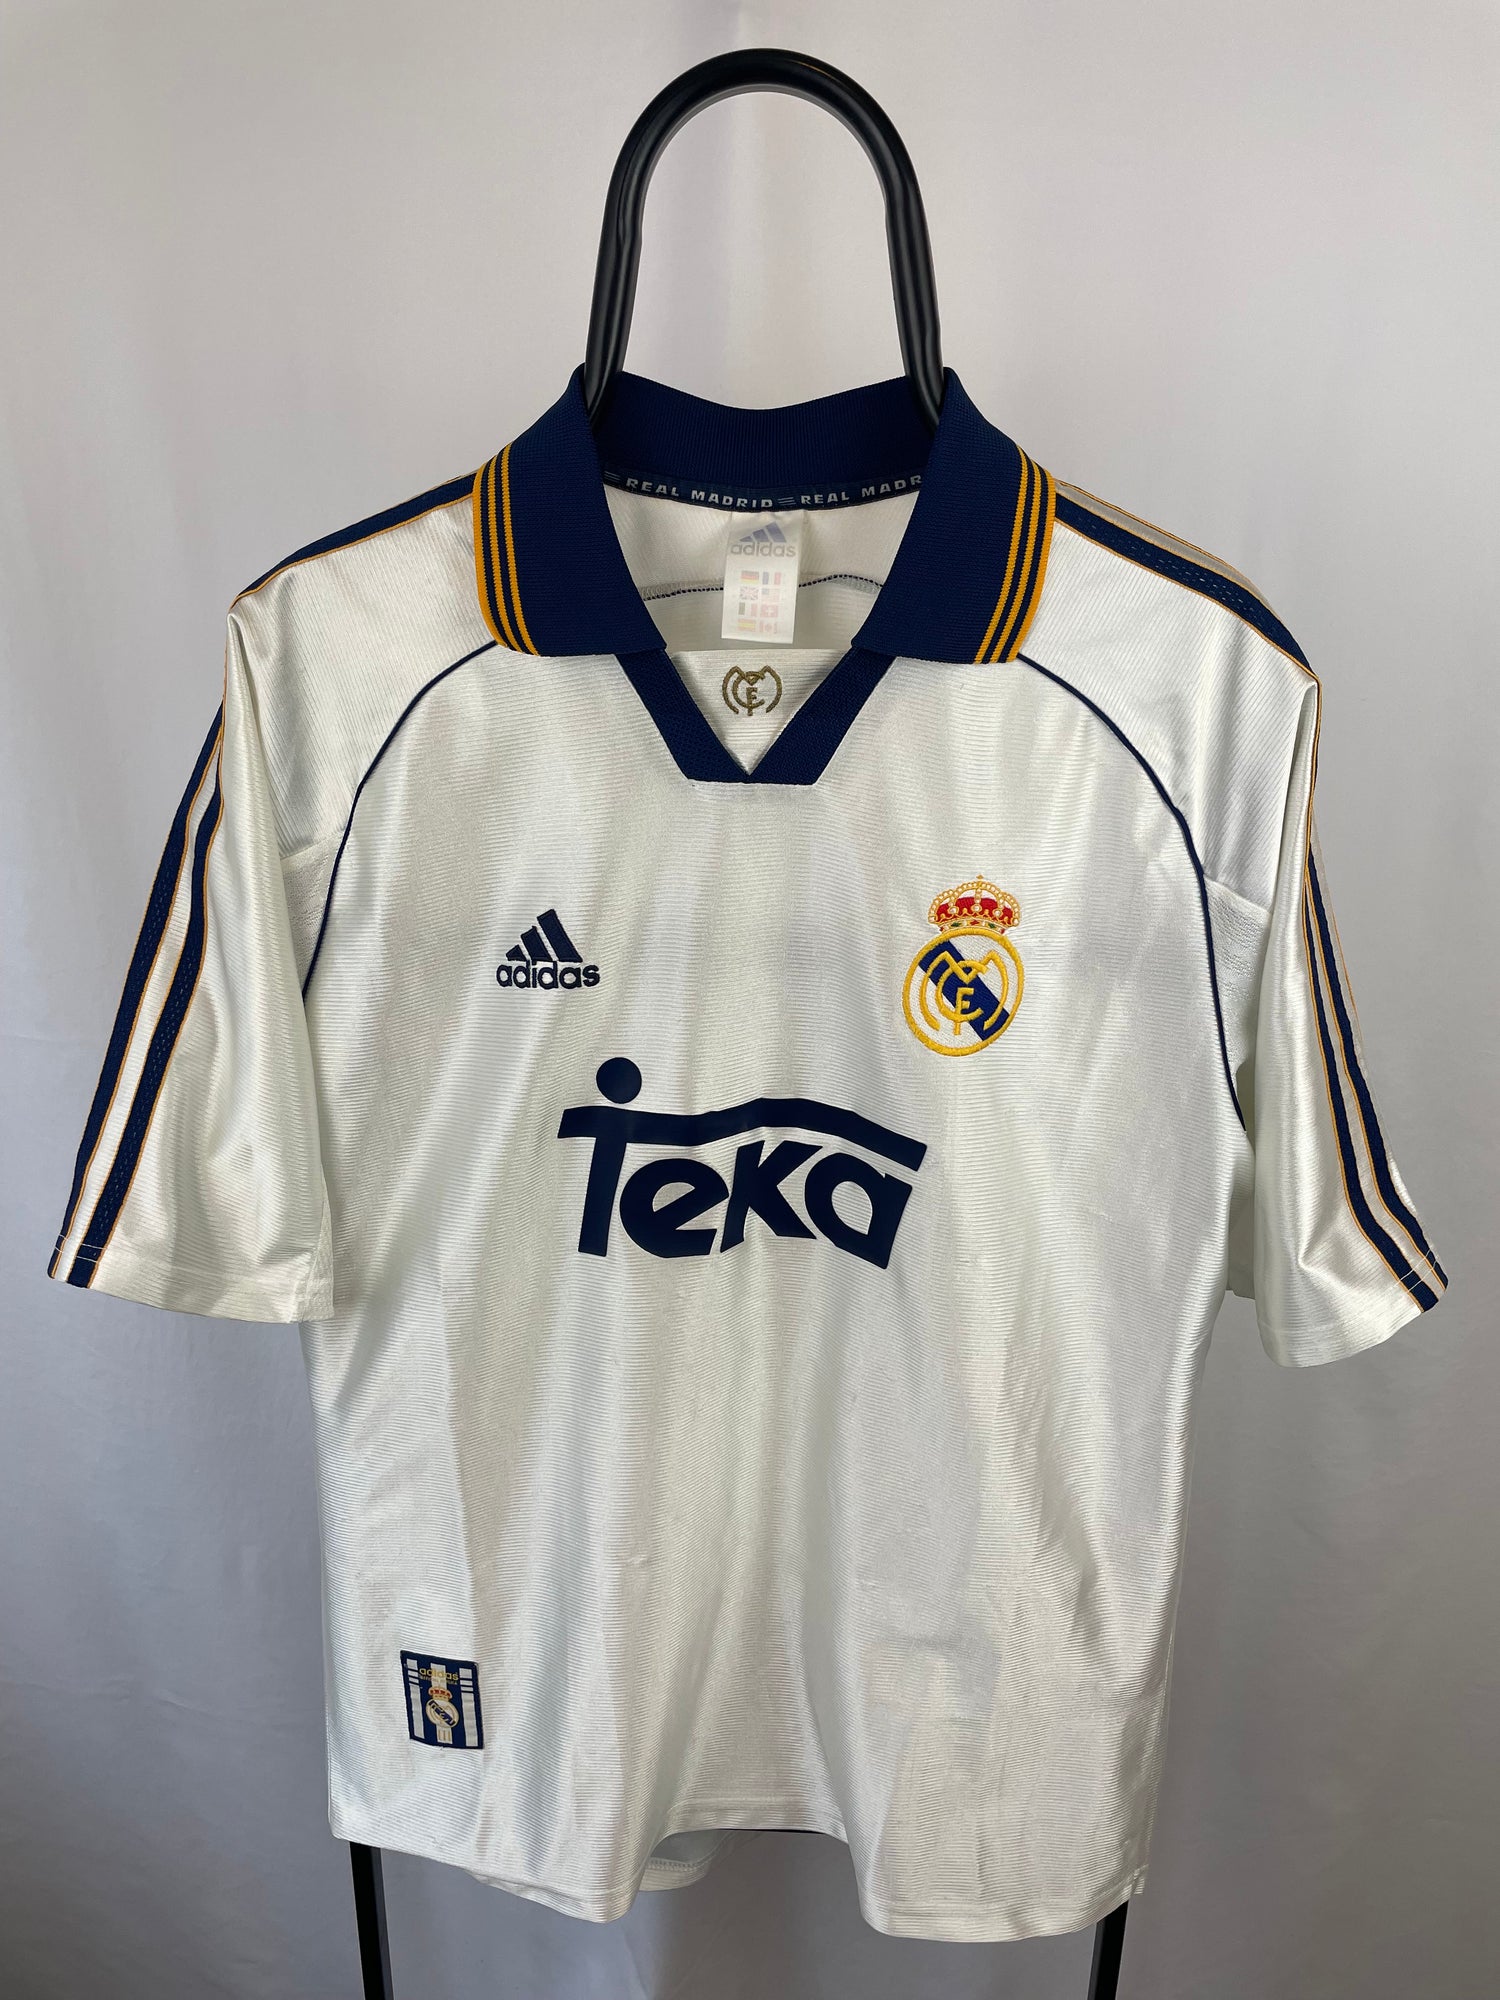 Guti Real Madrid 98/99 hjemmebanetrøje - M